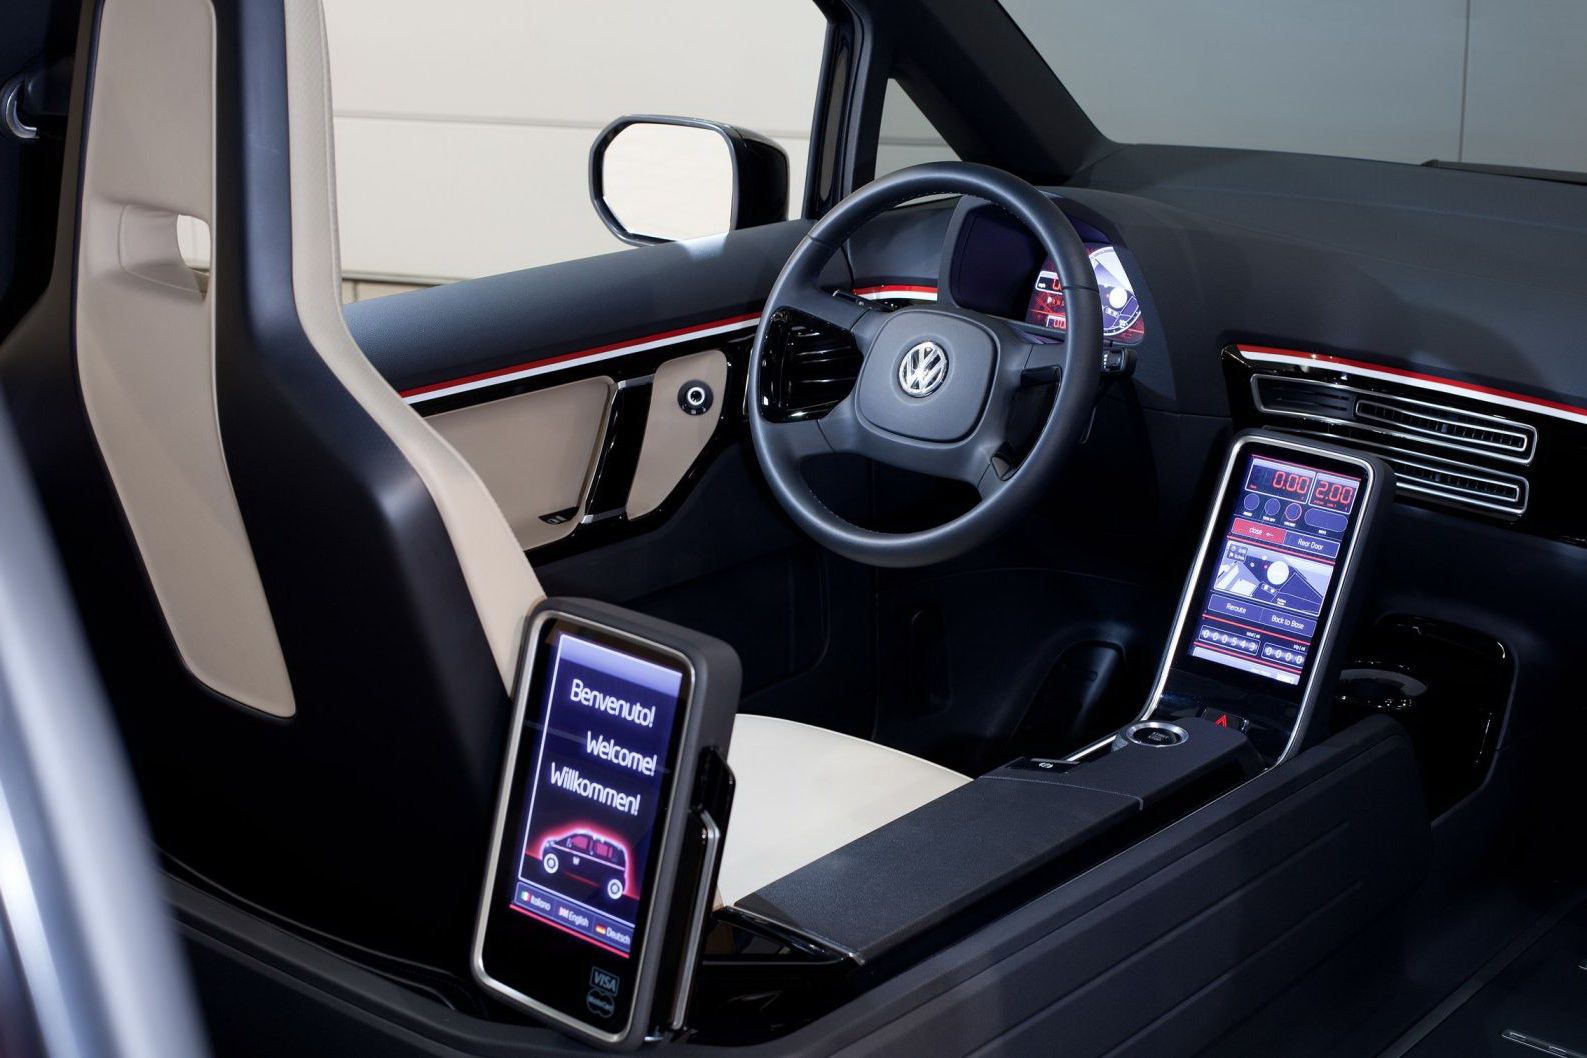 VW London Taxi pastreaza un layout inedit pentru usi si un post de conducere simplist